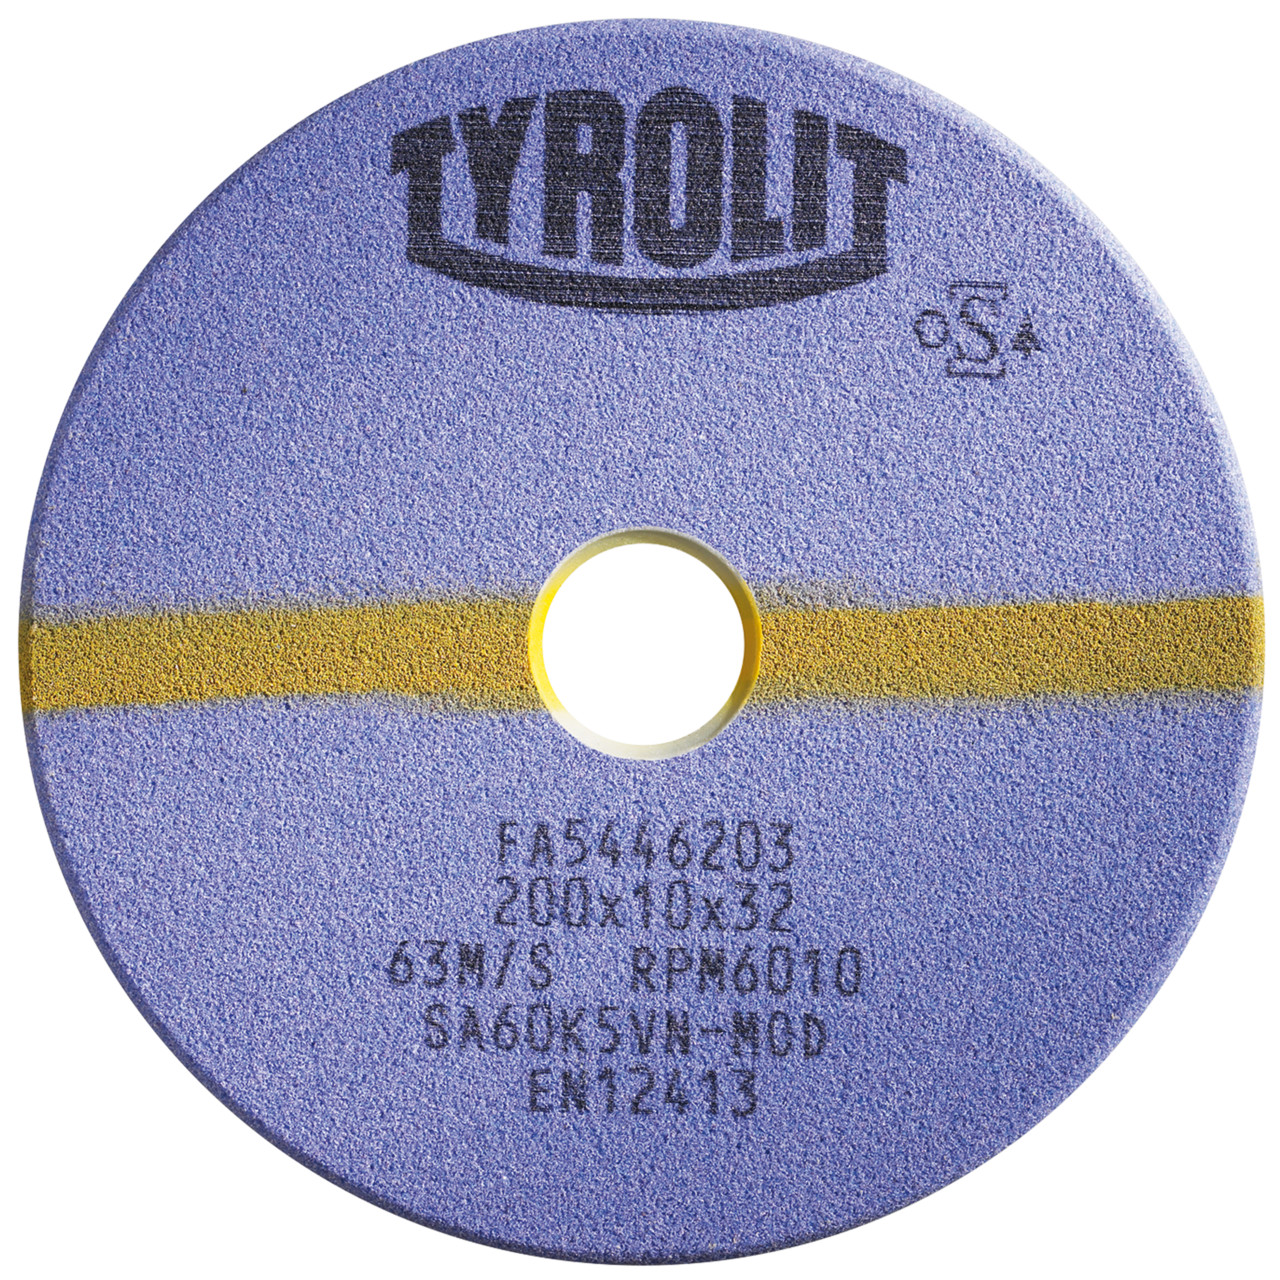 TYROLIT-hiontatyökalut automaattisille sahanteroituskoneille DxDxH 200x2x32 Pyörösahoille ja tähdellä varustetuille vannesahoille, muoto: 1C, Art. 922857